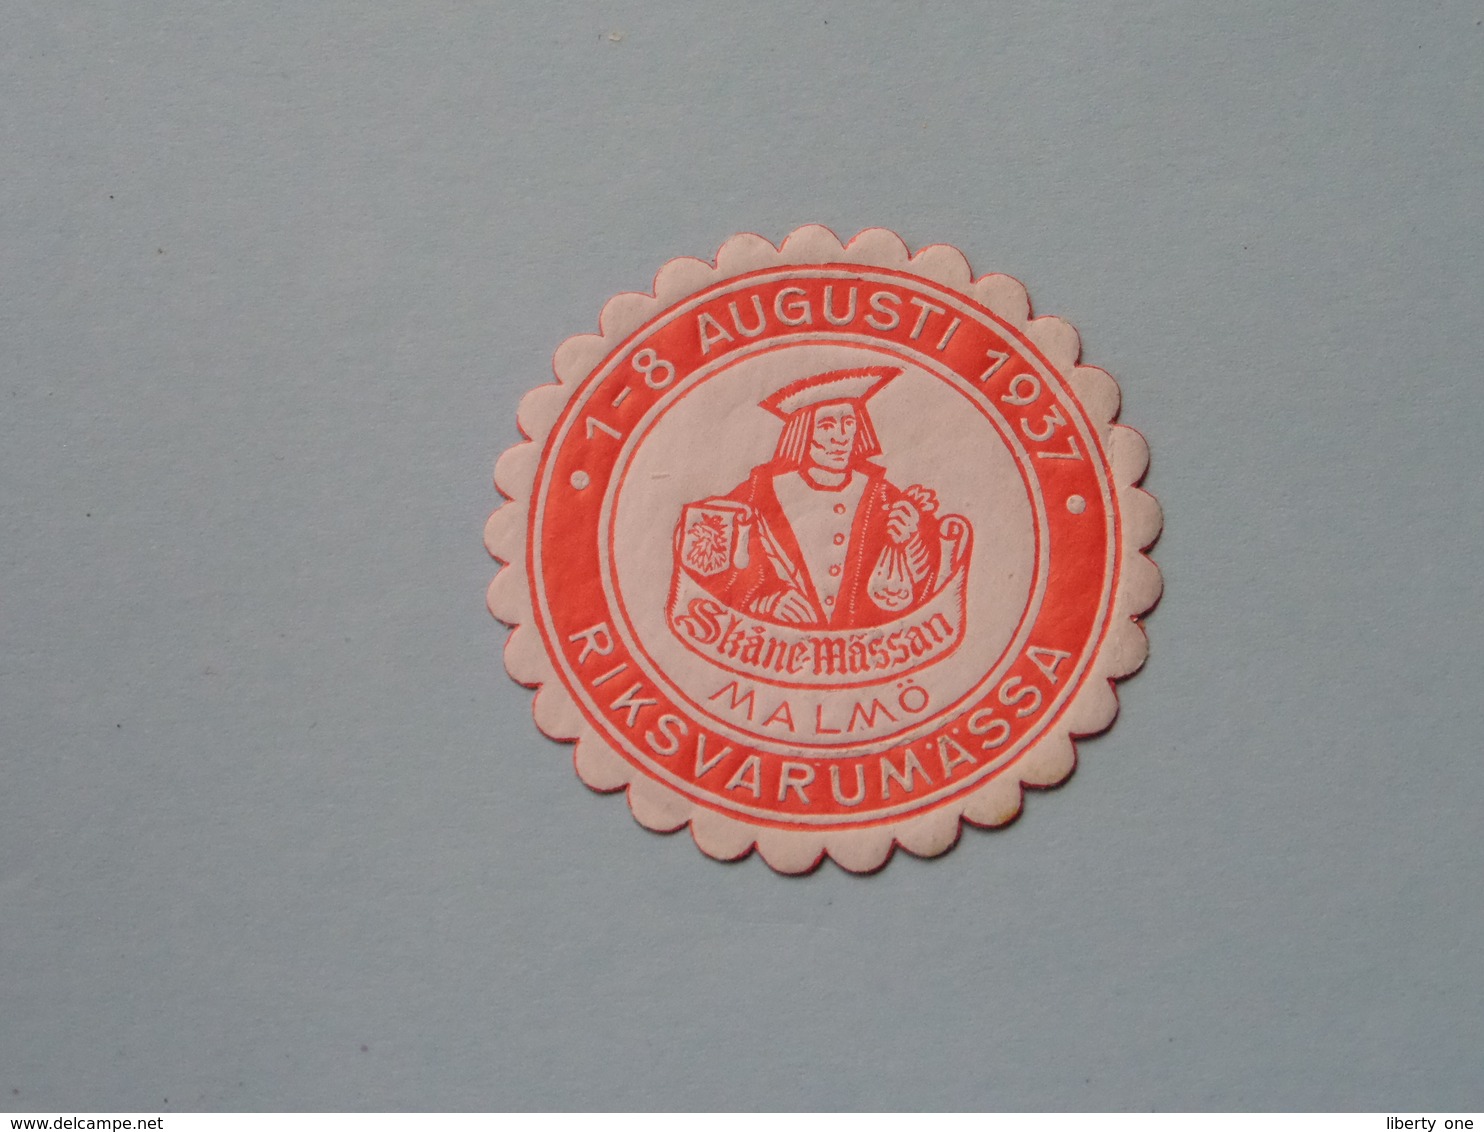 1937 RIKSVARUMASSA MALMÖ ( Sluitzegel Timbres-Vignettes Picture Stamp Verschlussmarken ) - Gebührenstempel, Impoststempel